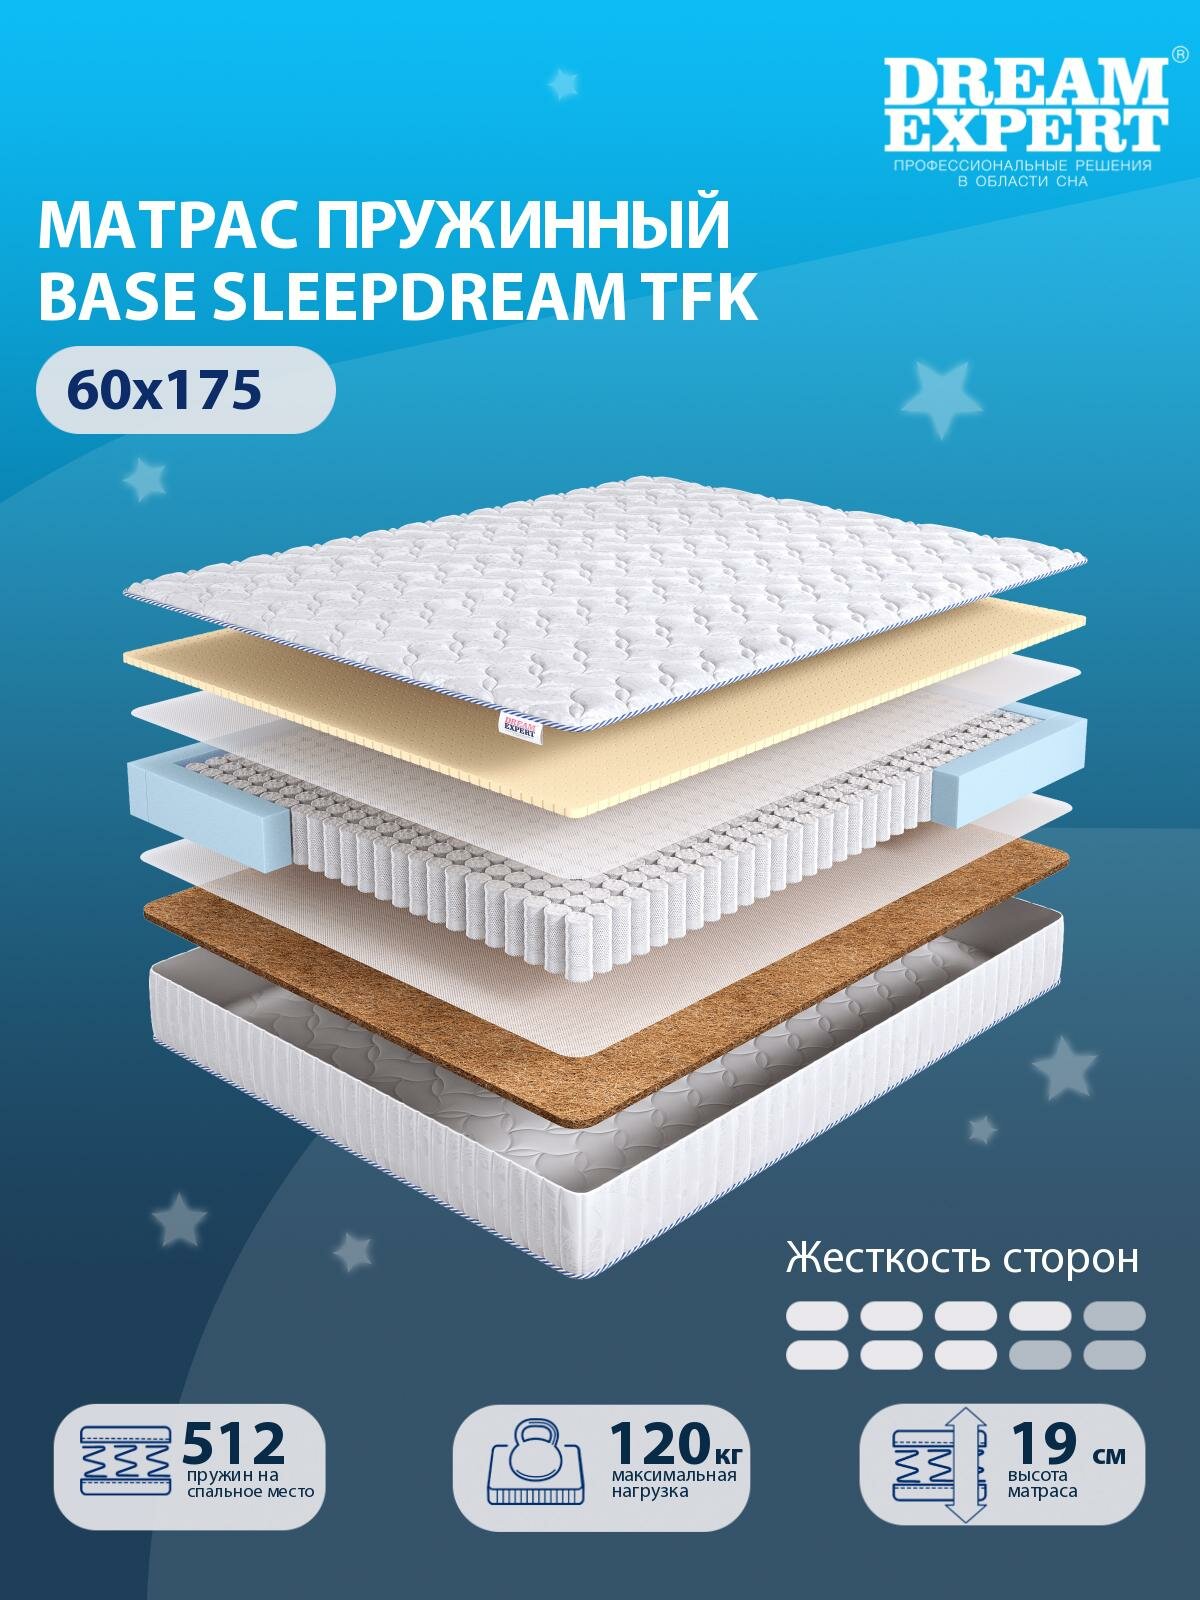 Матрас DreamExpert Base SleepDream TFK средней и выше средней жесткости, детский, независимый пружинный блок, на кровать 60x175